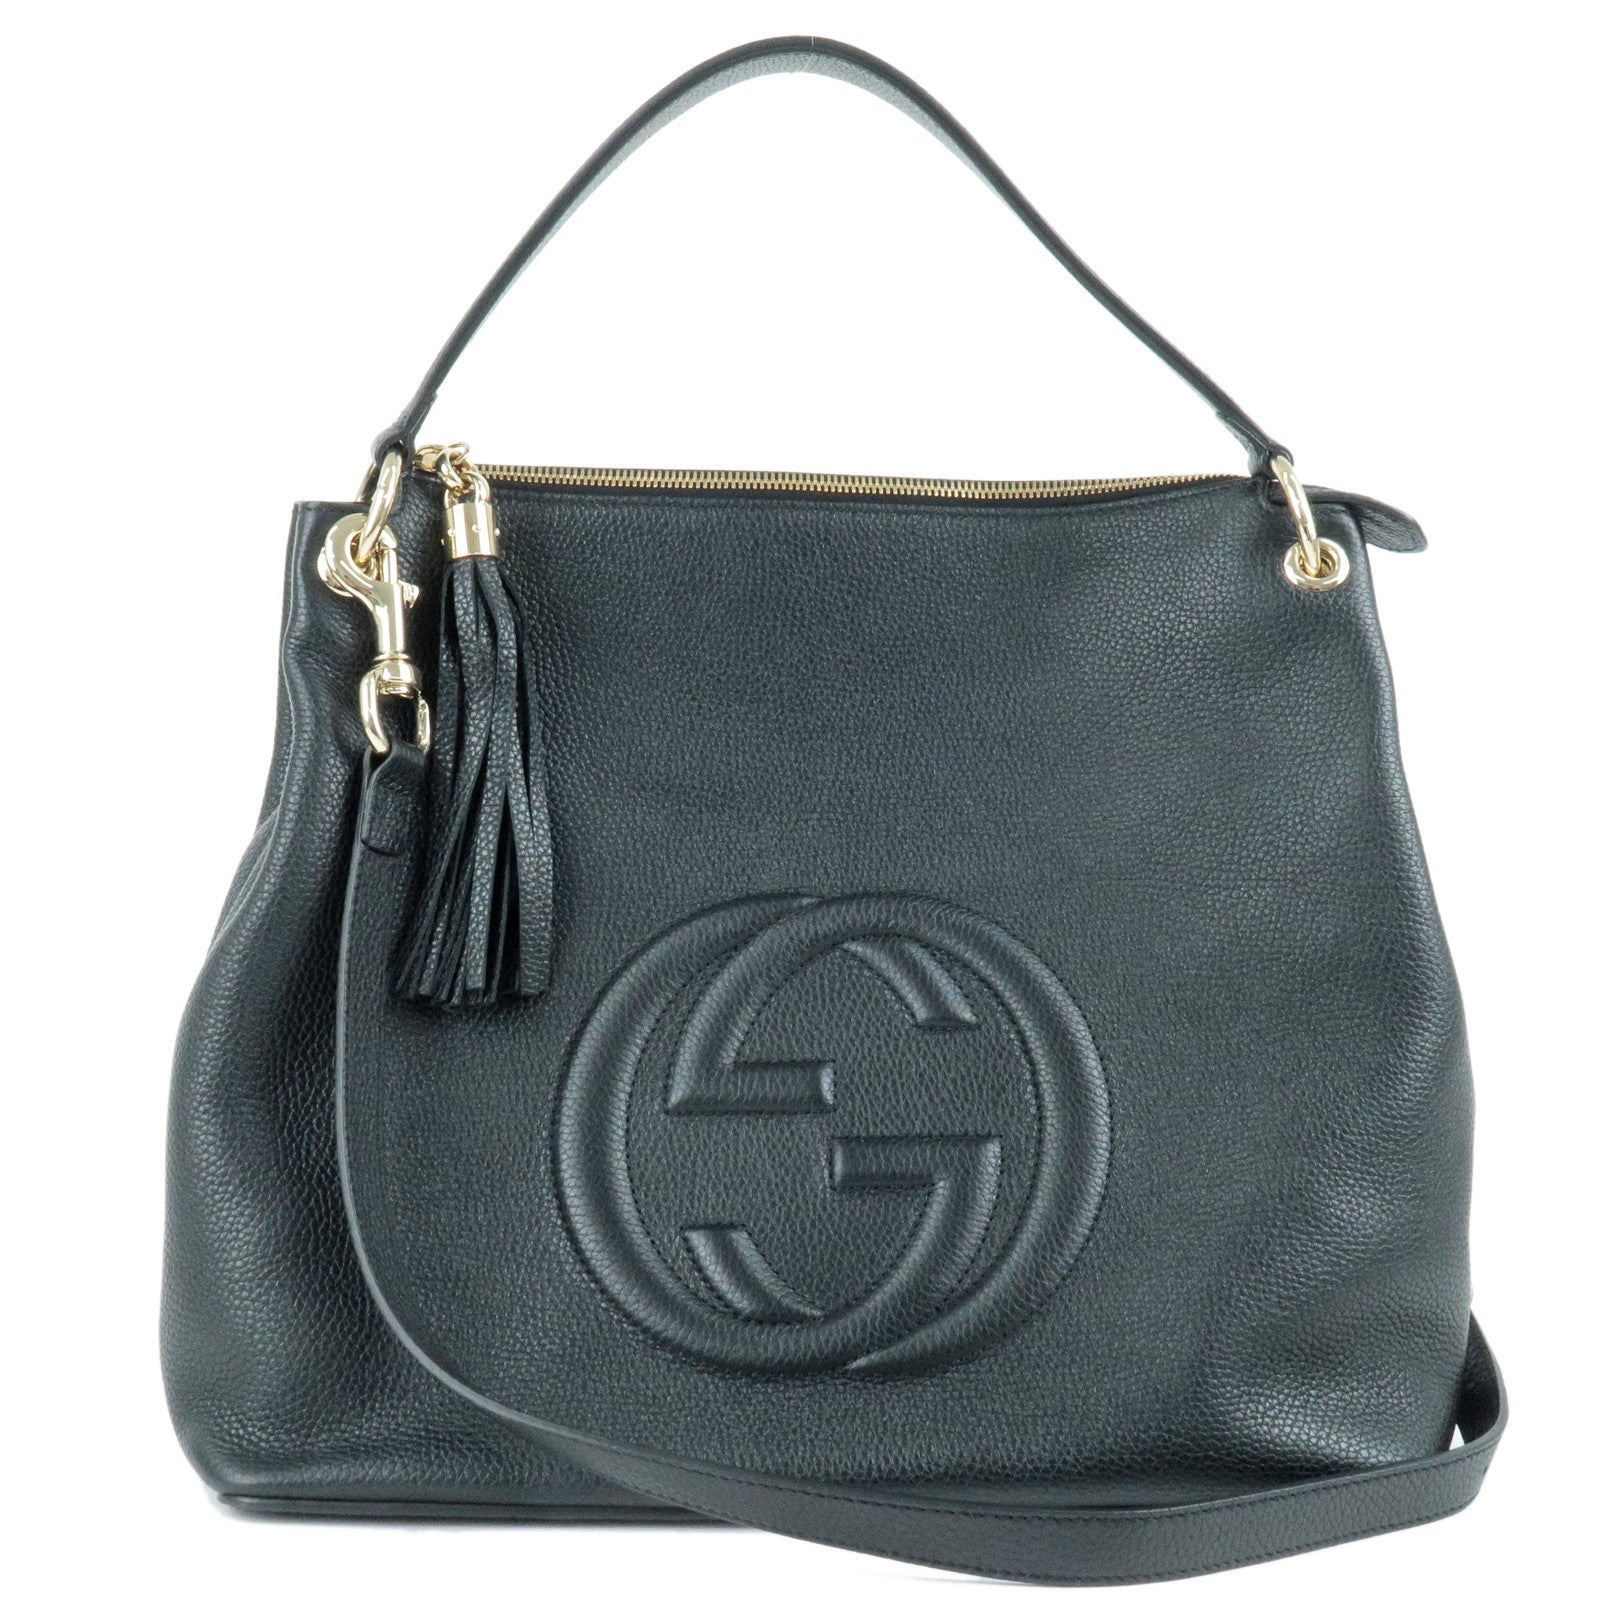 GUCCI-SOHO-Leather-Shoulder-Bag-2Way-Bag-Black-536194